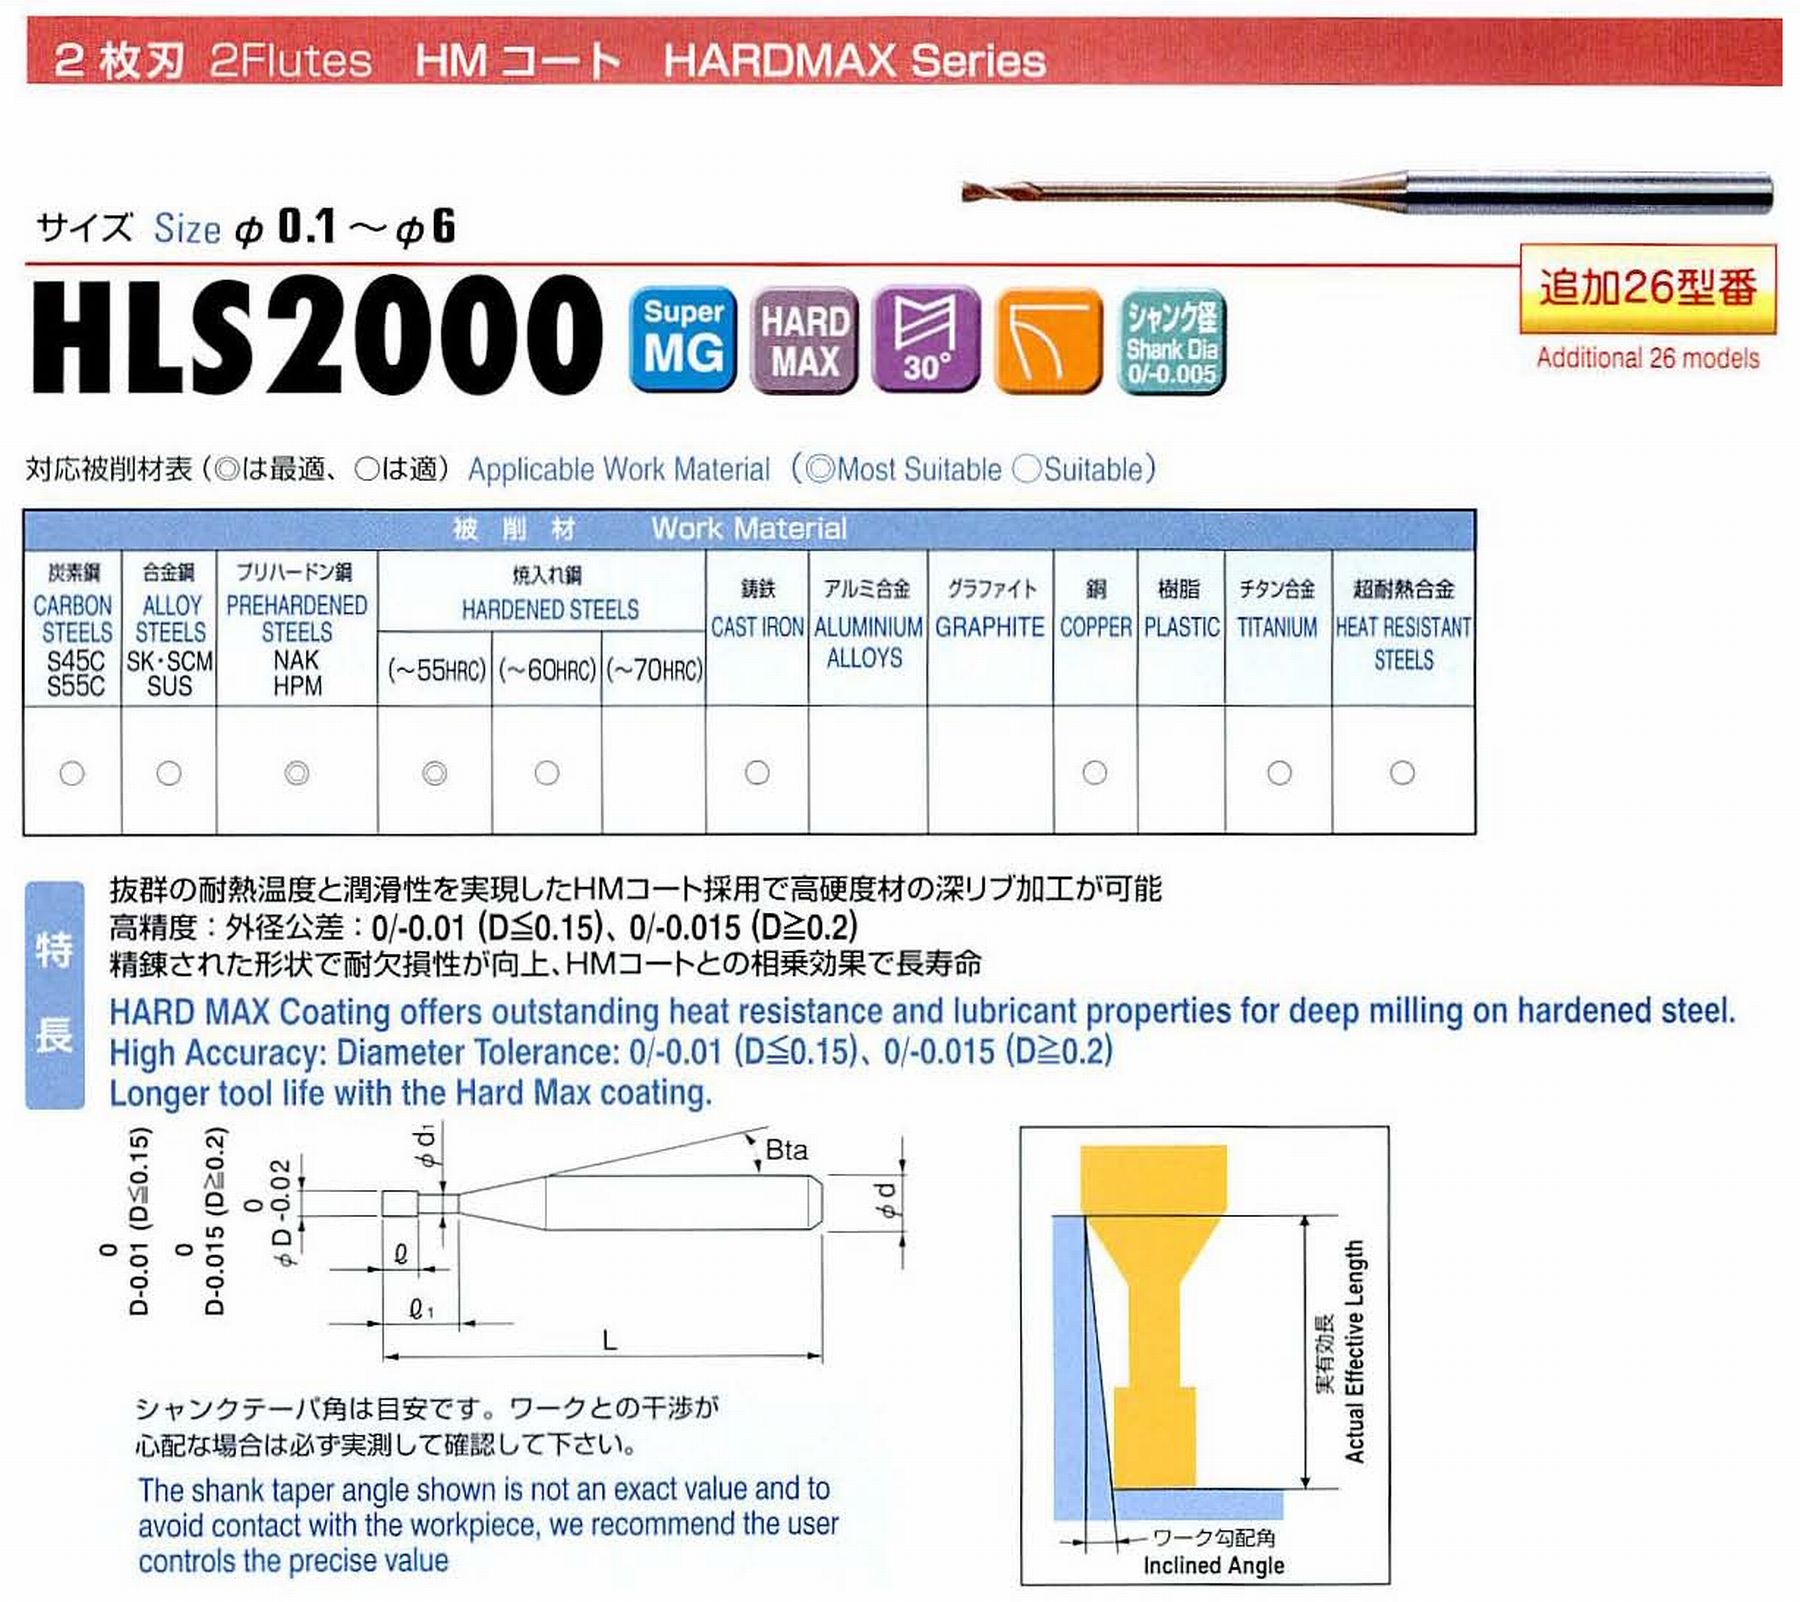 ユニオンツール 2枚刃 HLS2002-005 外径0.2 有効長0.5 刃長0.3 首径0.18 シャンクテーパ角16° 全長45 シャンク径4